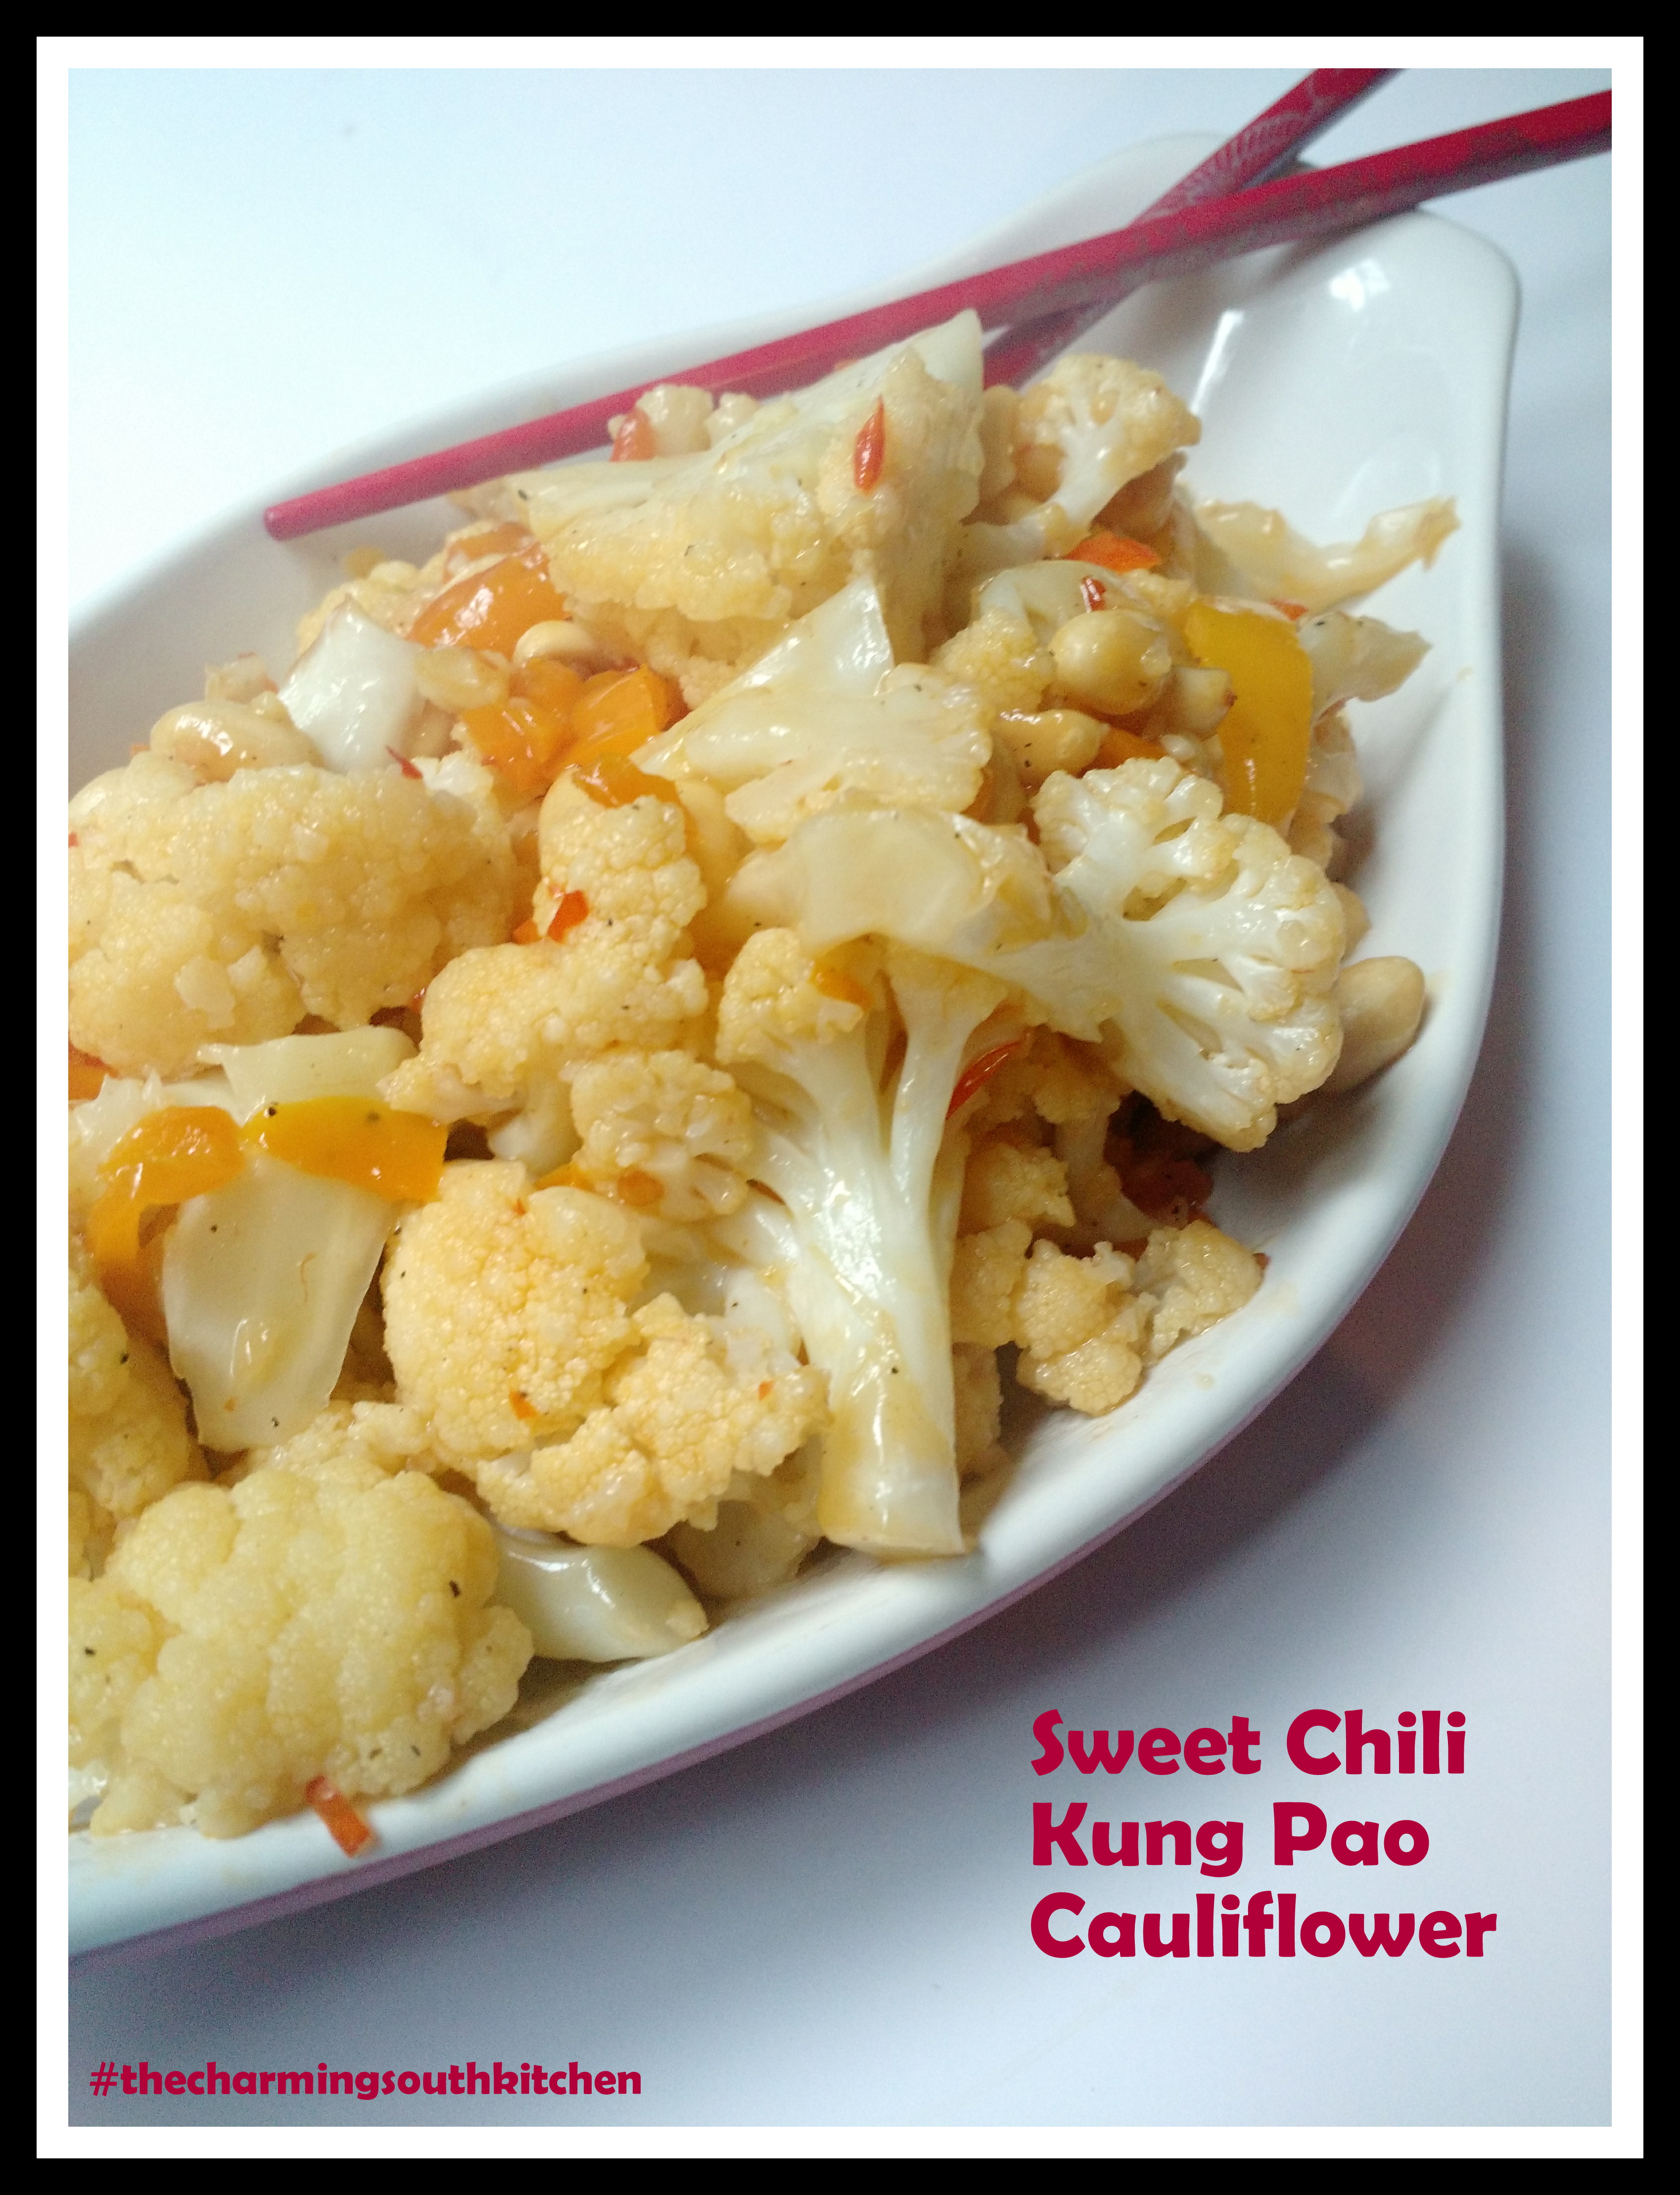 Sweet Chili Kung Pao Cauliflower